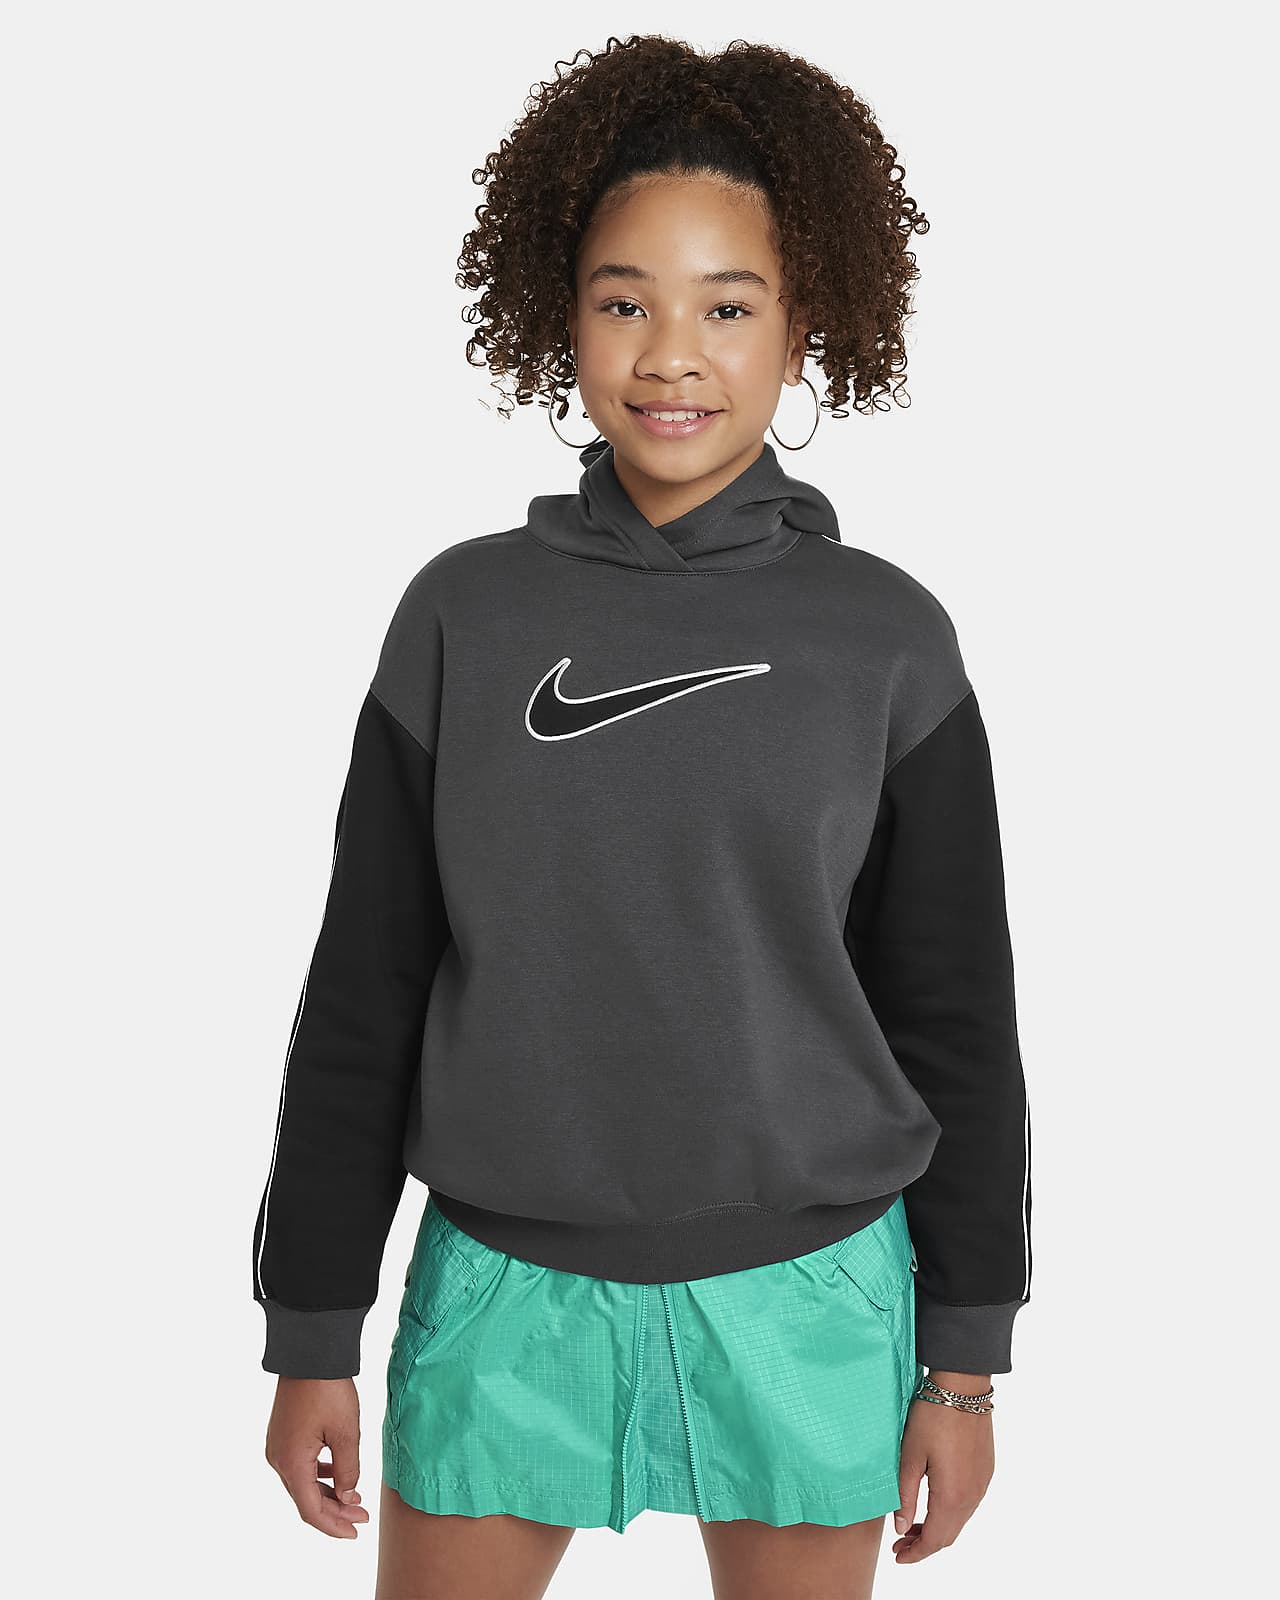 Volná flísová mikina Nike Sportswear s kapucí pro větší děti (dívky)